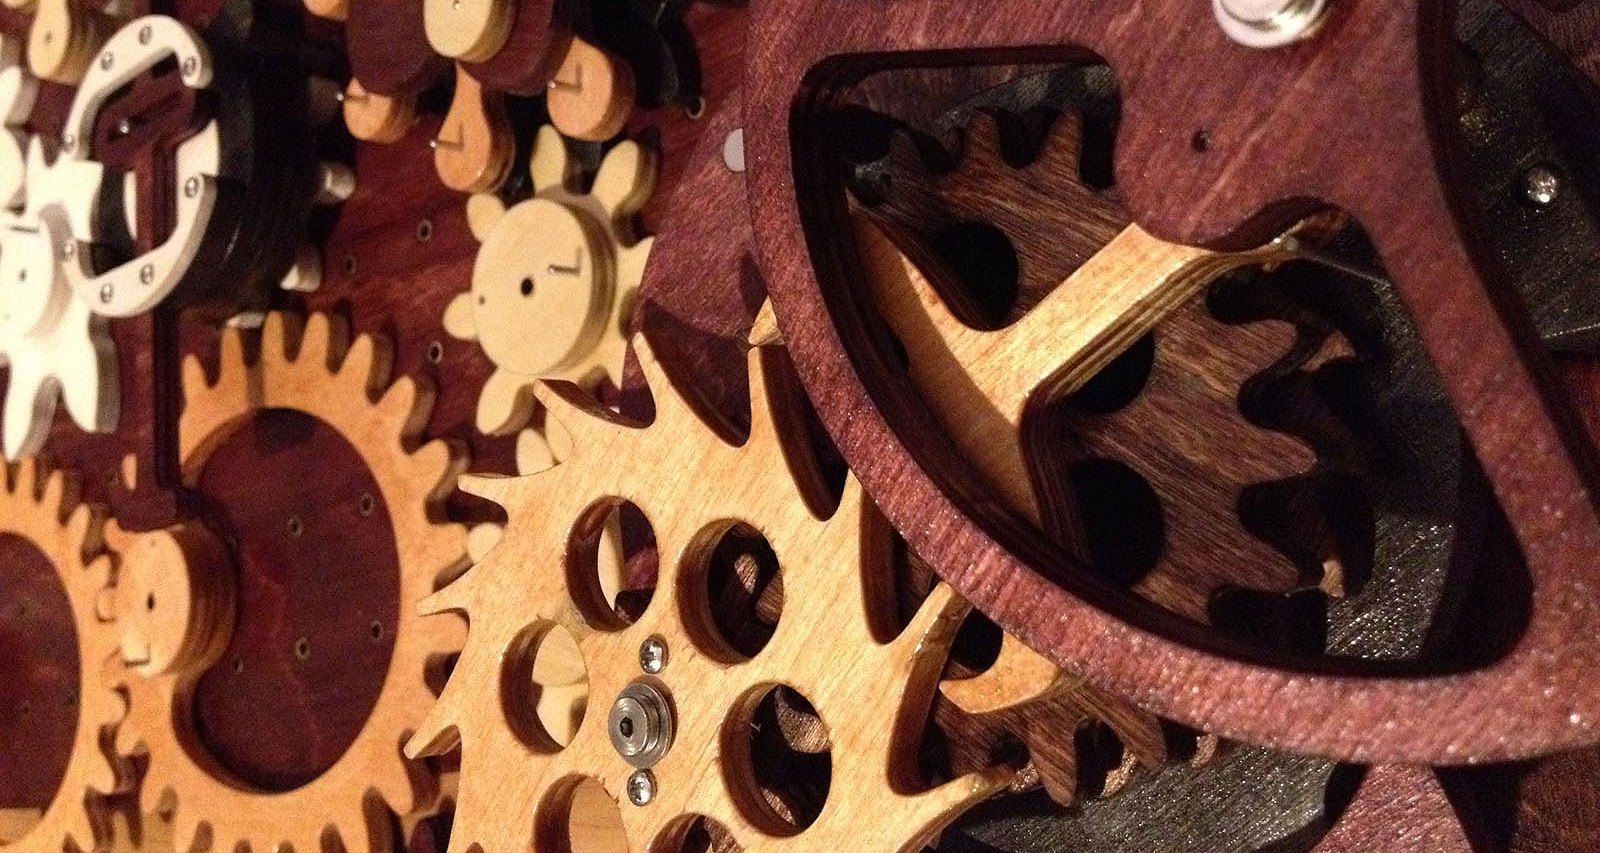 Умное дерево: как устроены фантастические деревянные механизмы Дерека Хаггера